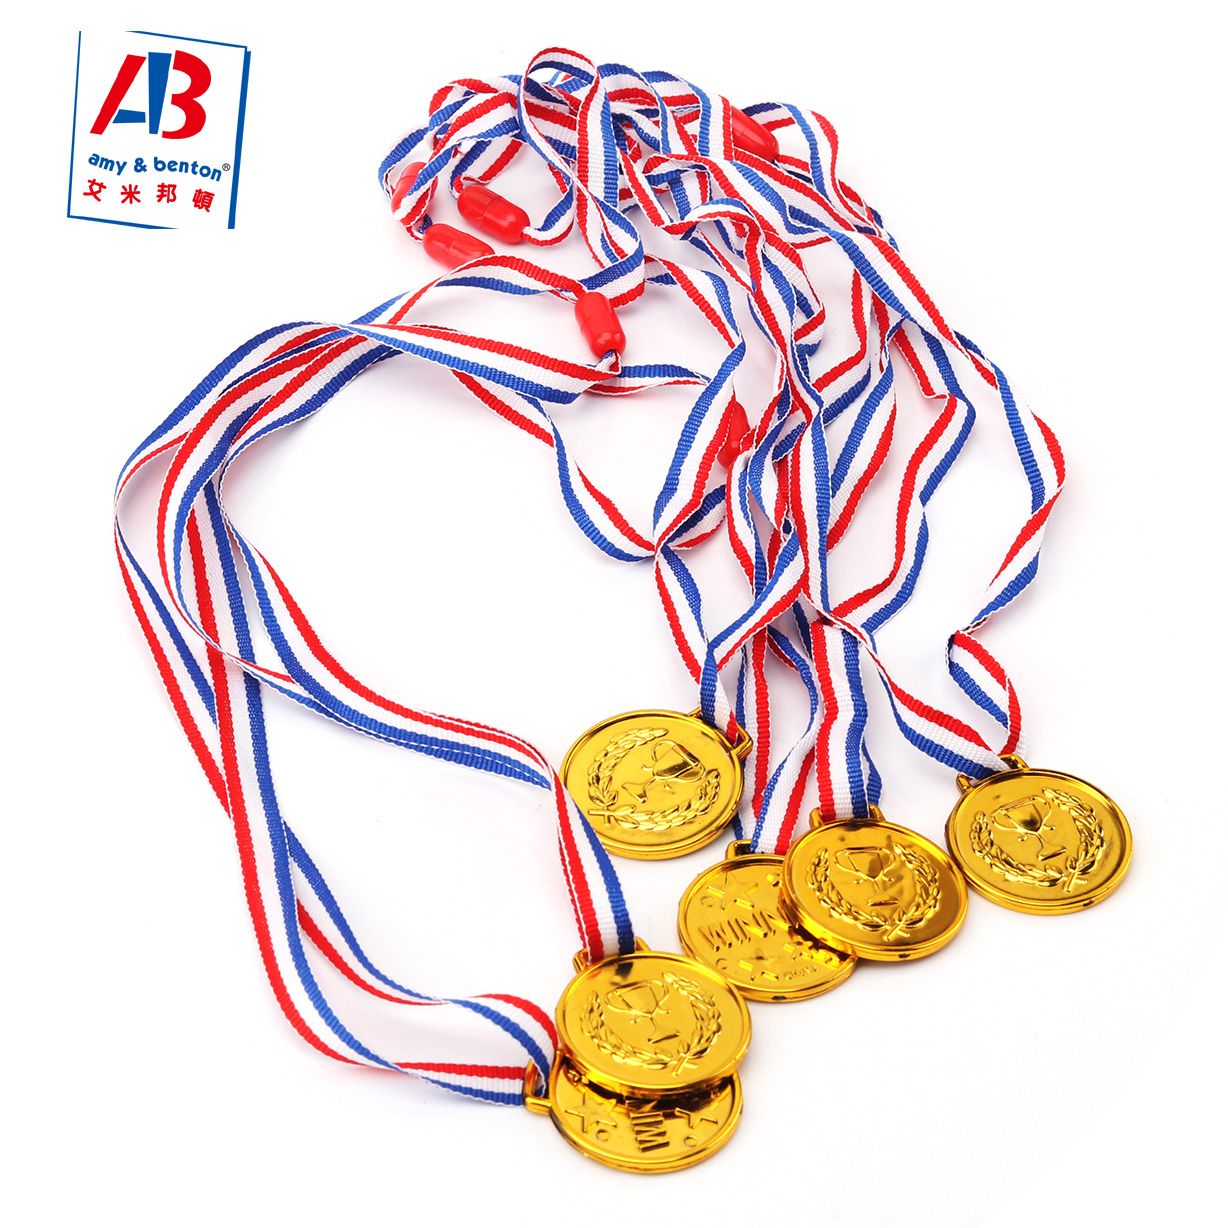 6 Stück Goldmedaillen für Kinder, Medaillen für Auszeichnungen, Kunststoff-Gewinnermedaillen für Kinder